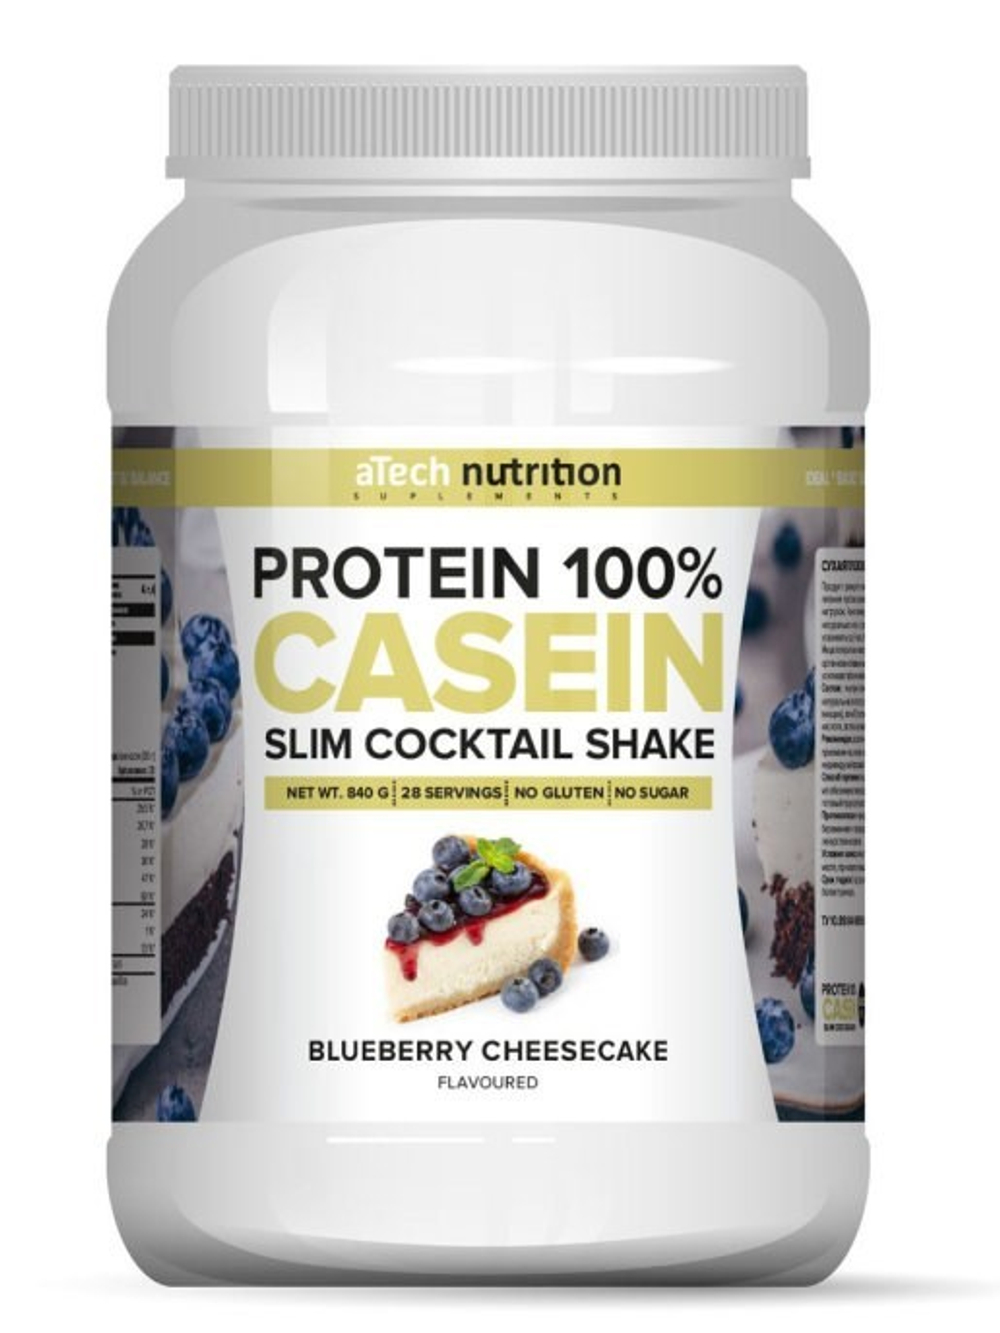 СУХАЯ ПОРОШКОВА СМЕСЬ «Casein Protein» («Казеин протеин») 840 гр со вкусом Черничный чизкейк тм aТec